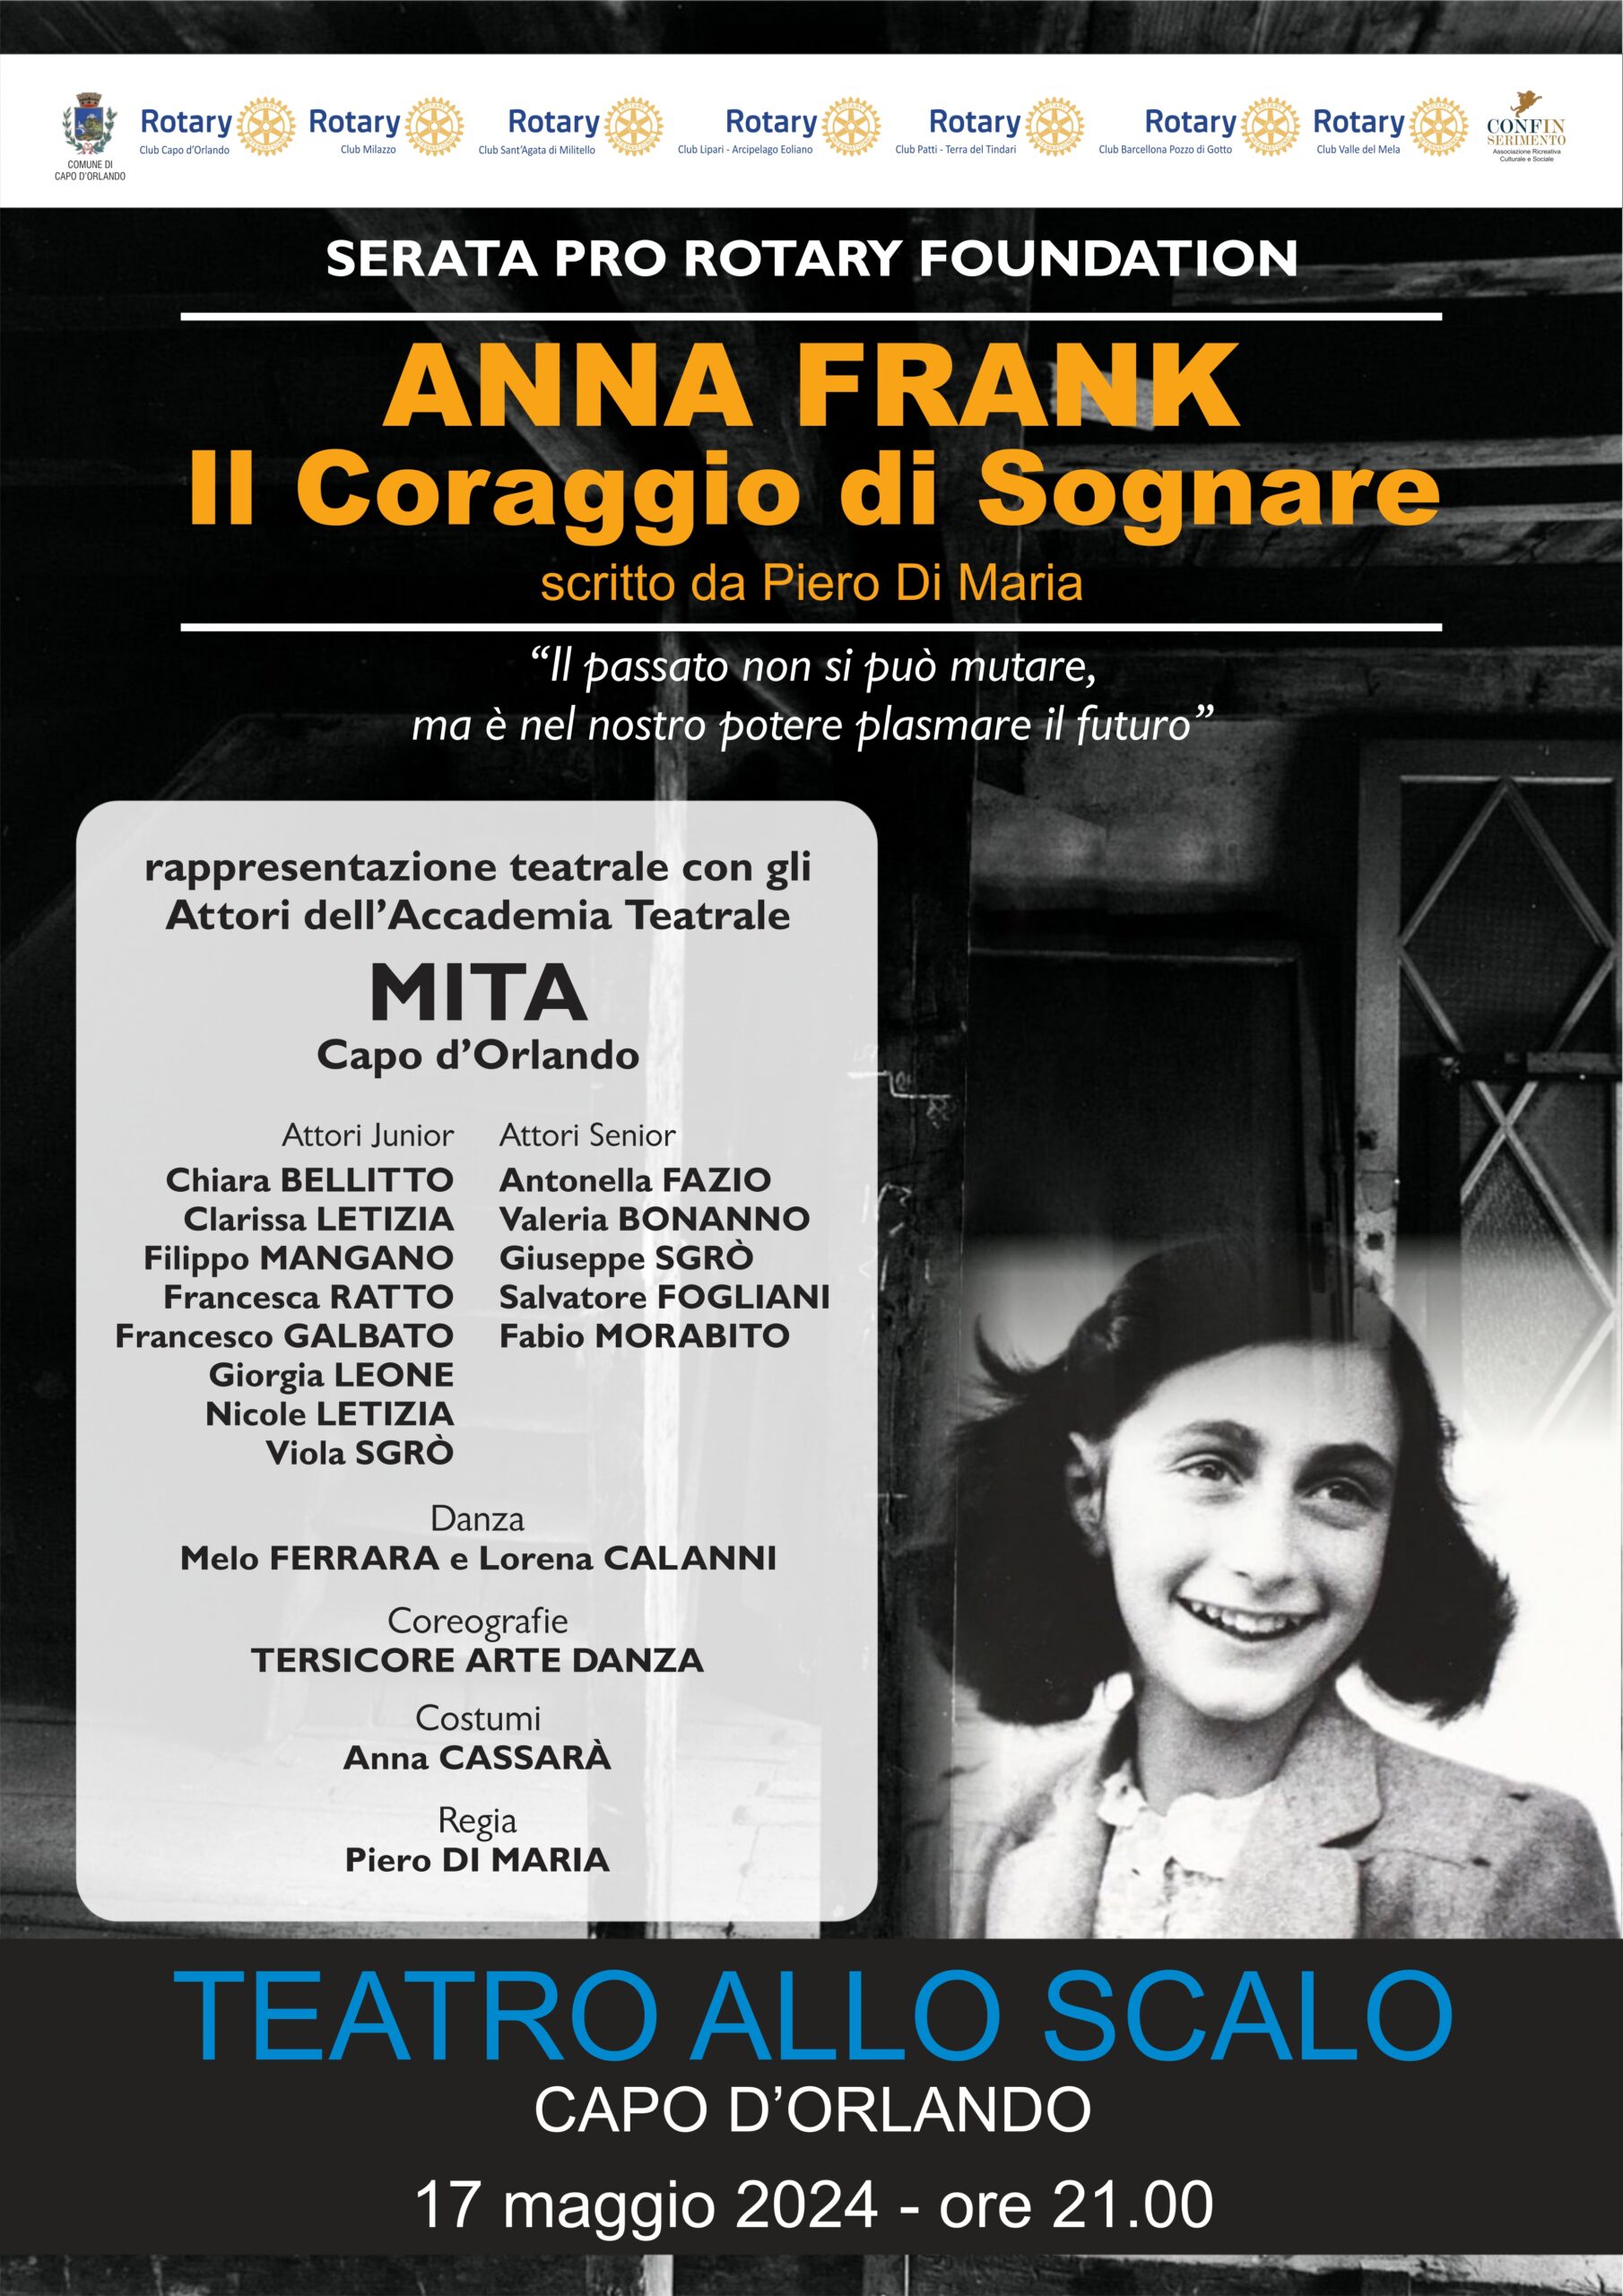 “Anna Frank: Il Coraggio di Sognare”